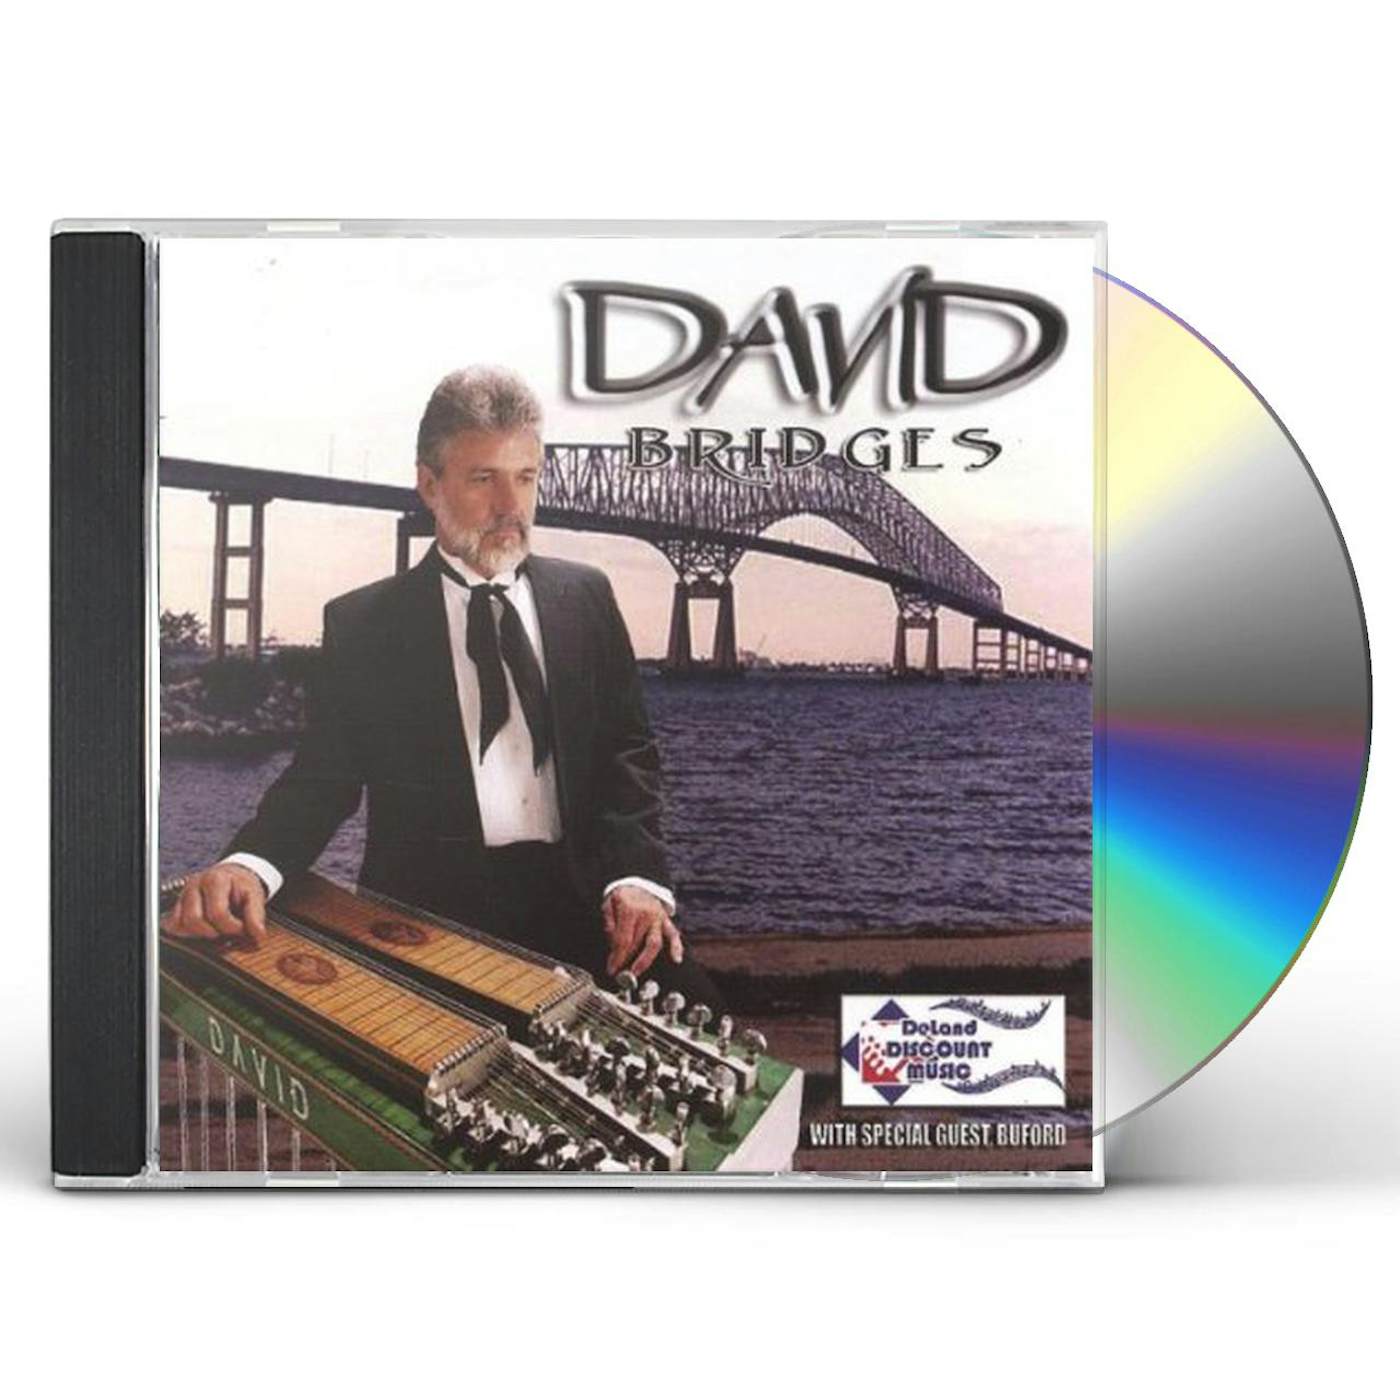 David BRIDGES CD